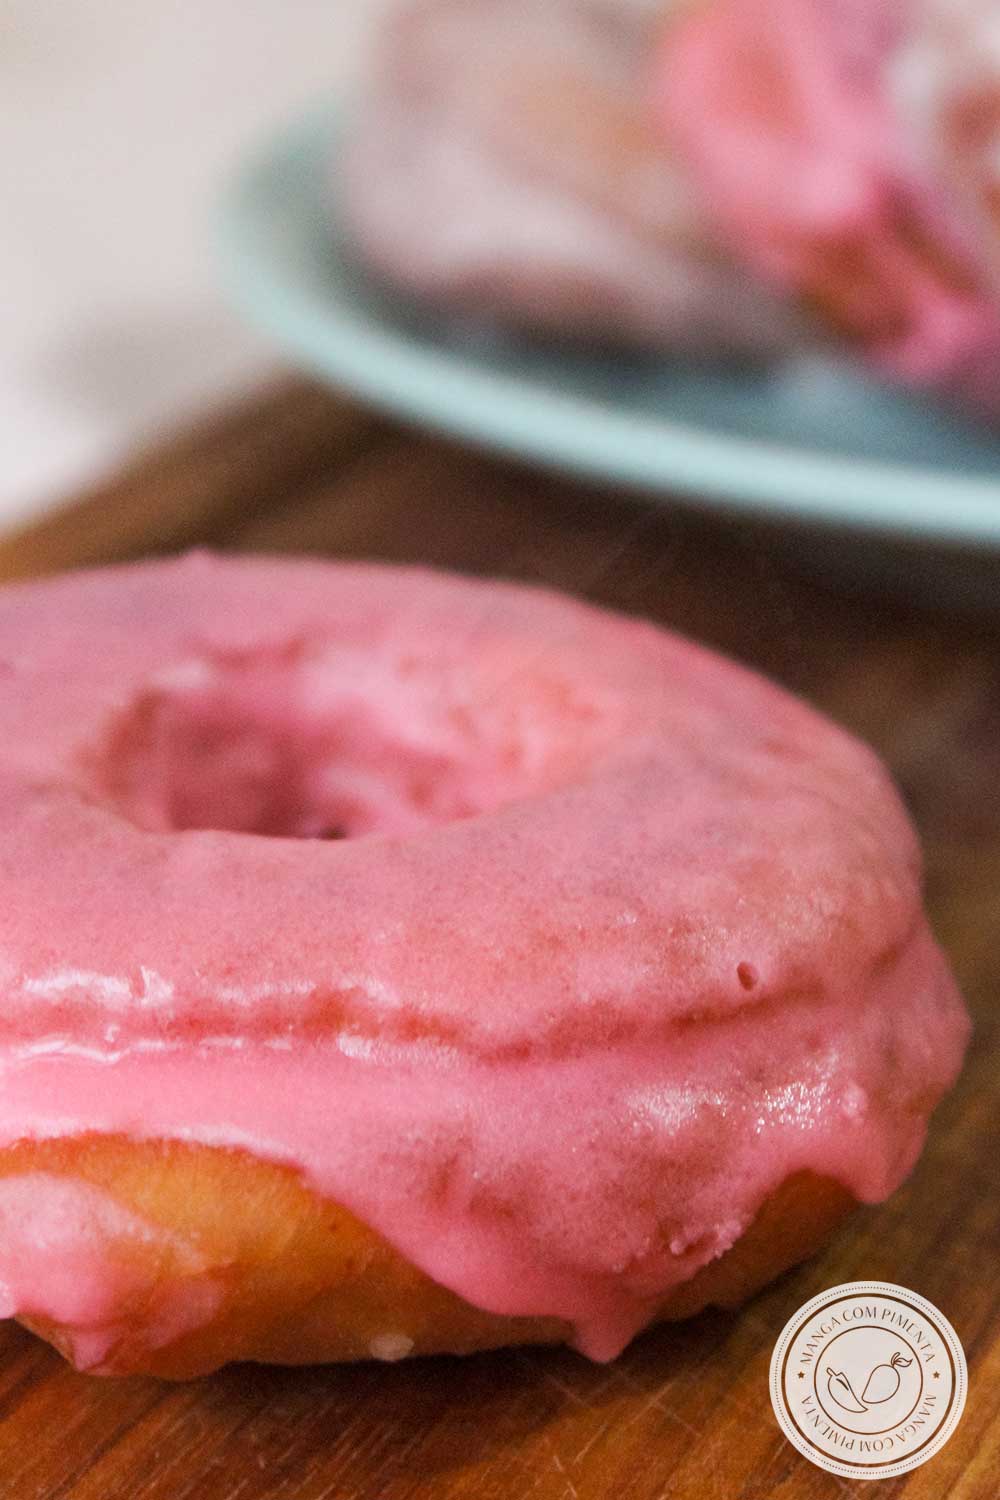 Receita de Donuts Americanos Caseiros- um lanche delicioso para família ou prepare para vender ou presentear!